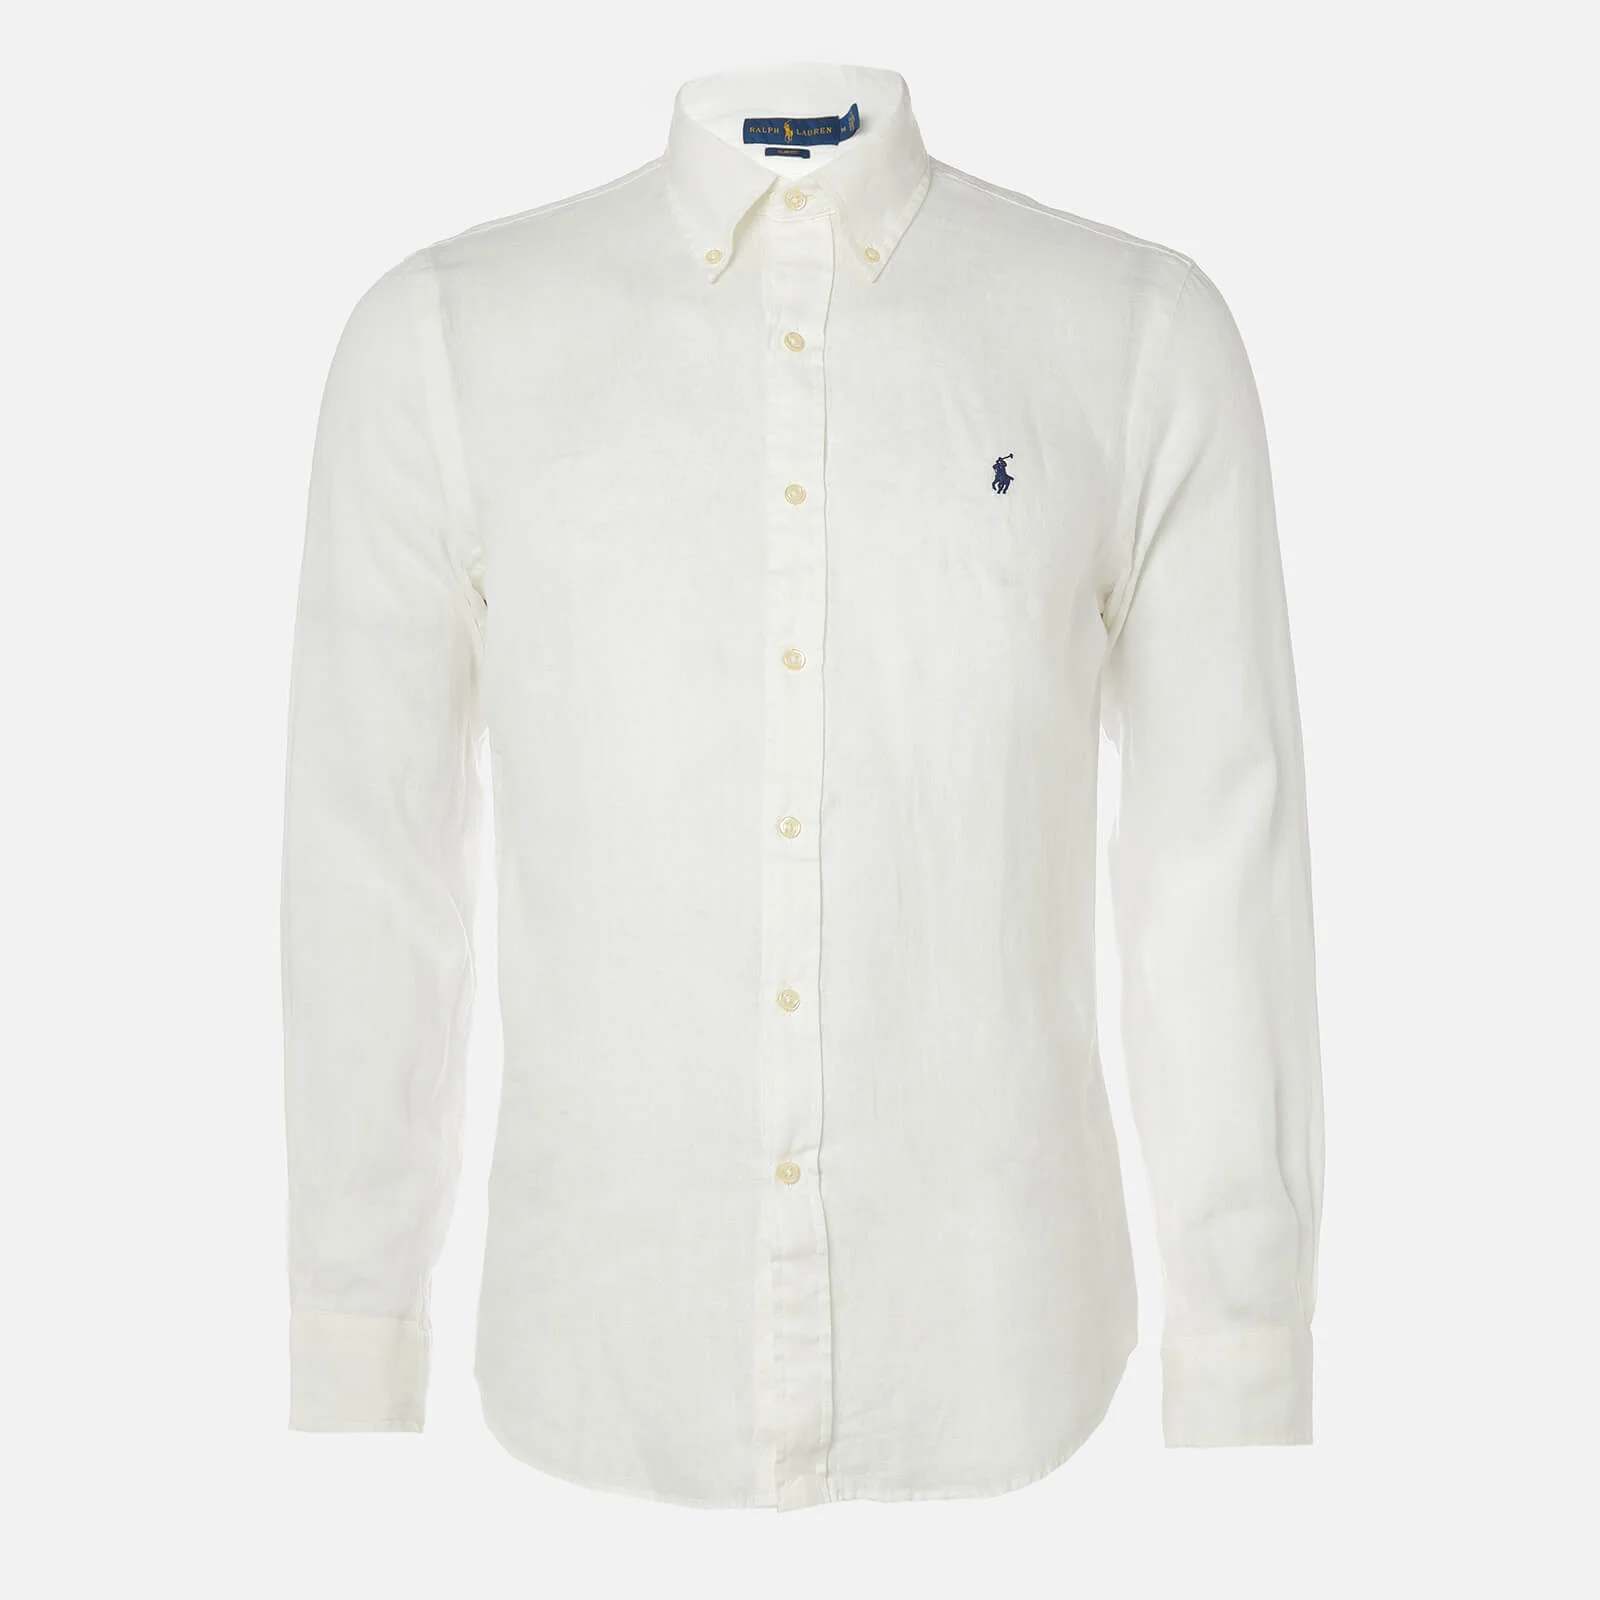 Polo Ralph Lauren Men's Long Sleeve Sport Shirt - White Image 1